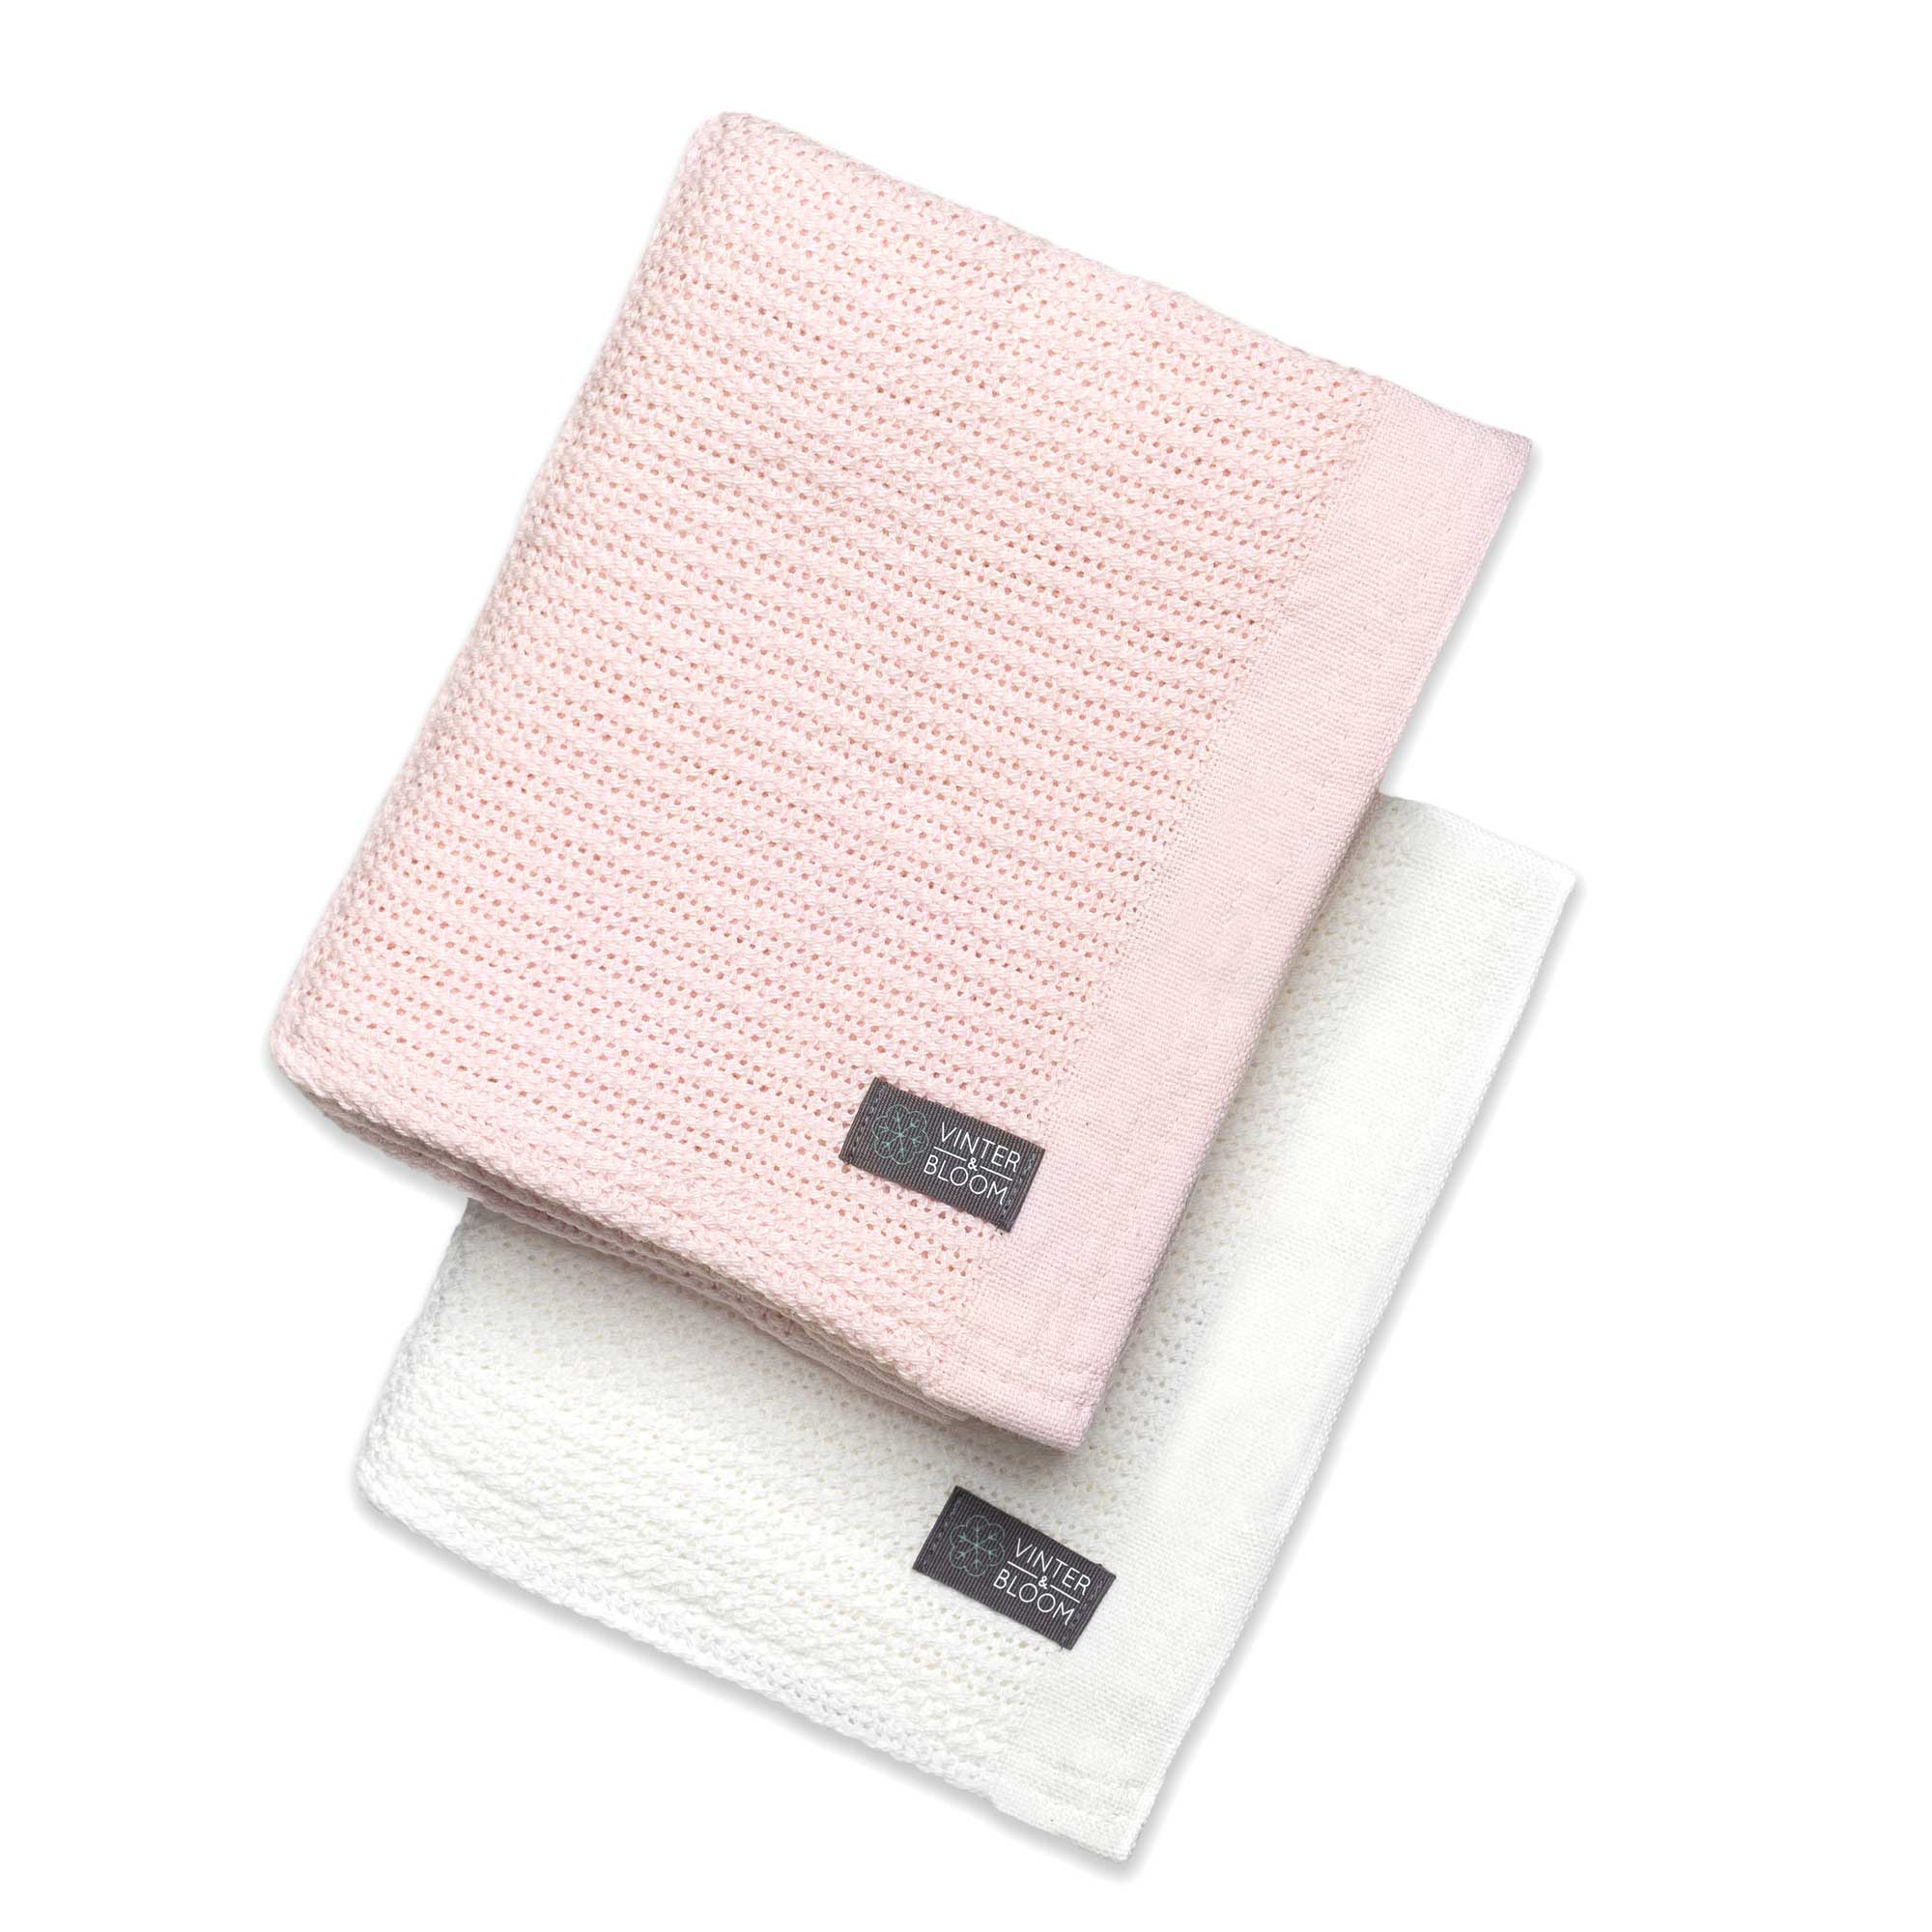 Blanket Soft Grid 2-pack